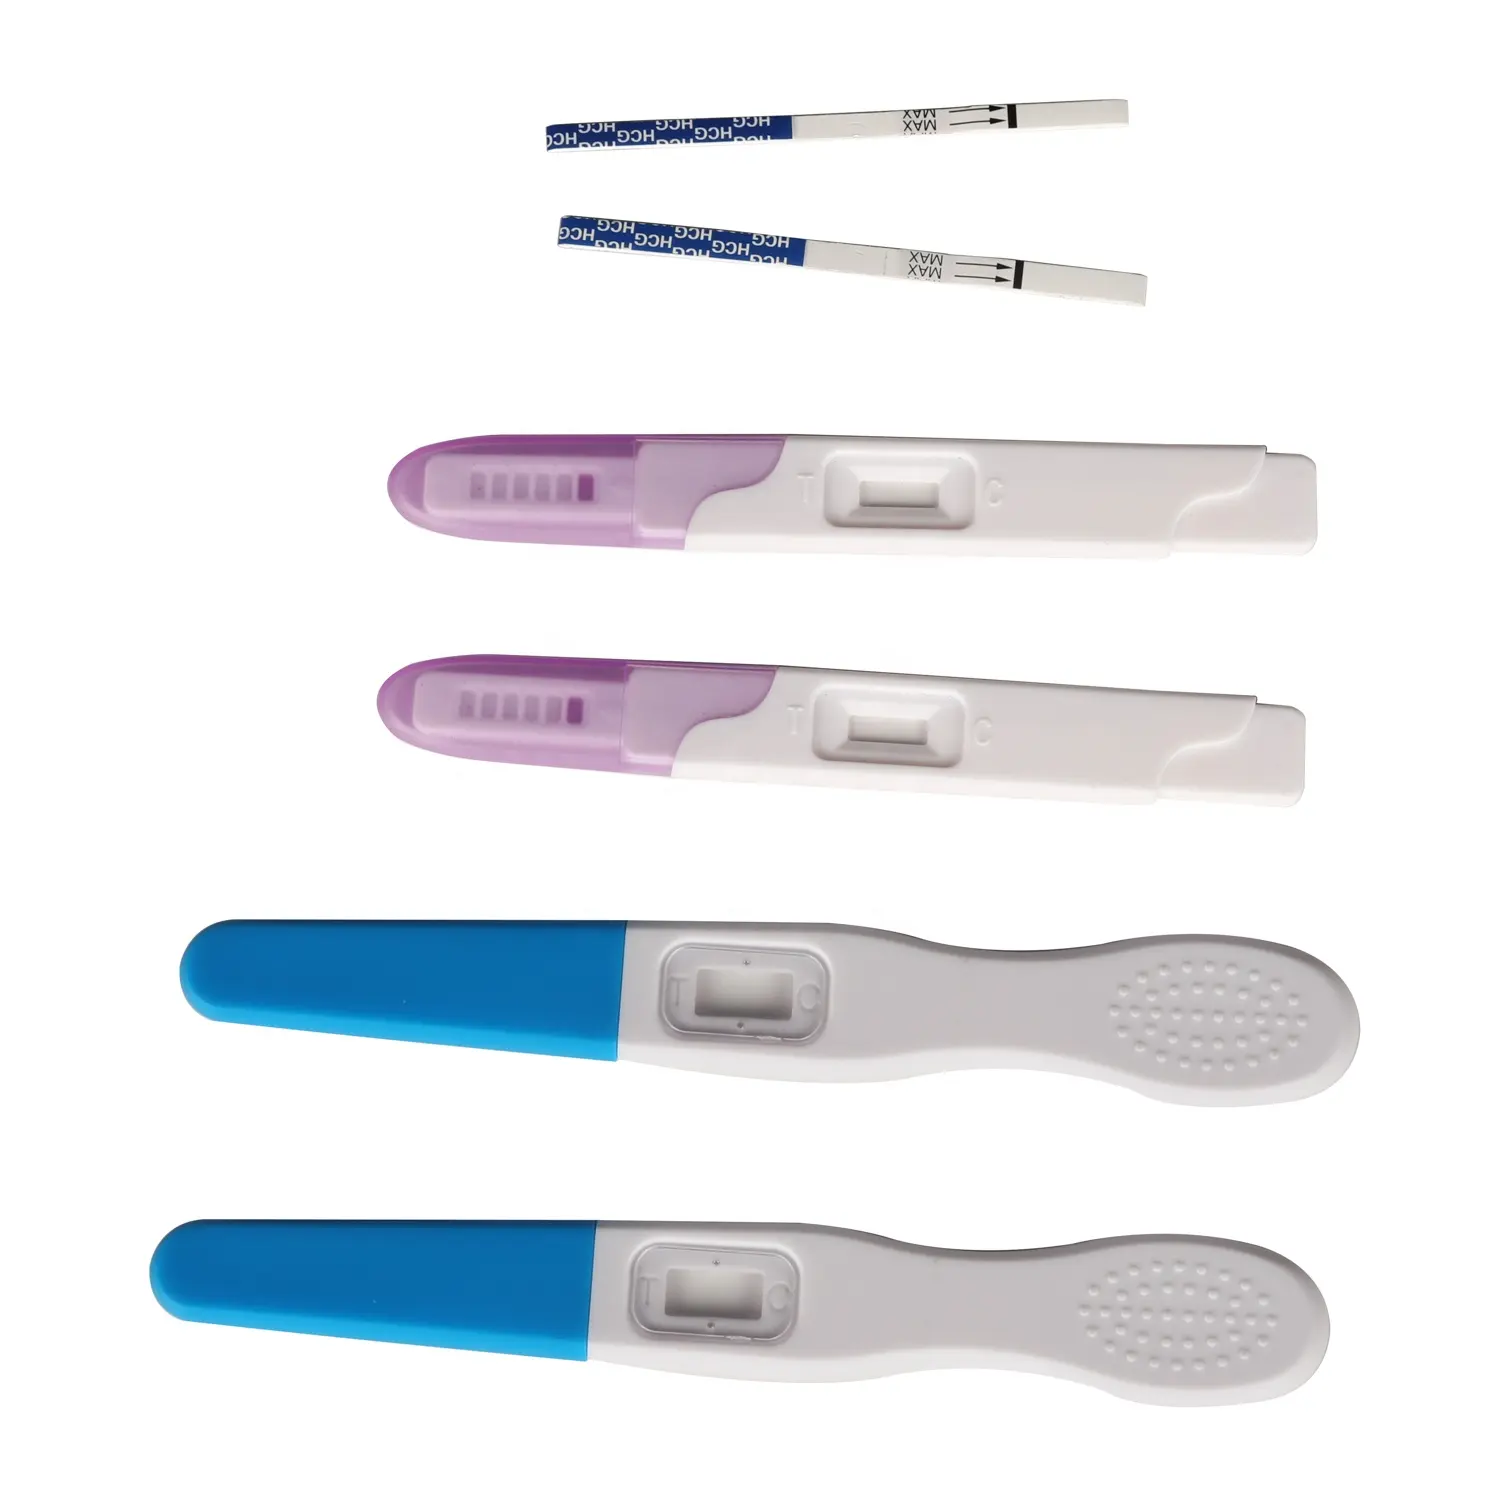 Testeur de grossesse précis à 99%, bâton de Test précoce, adapté aux femmes enceintes, livraison gratuite